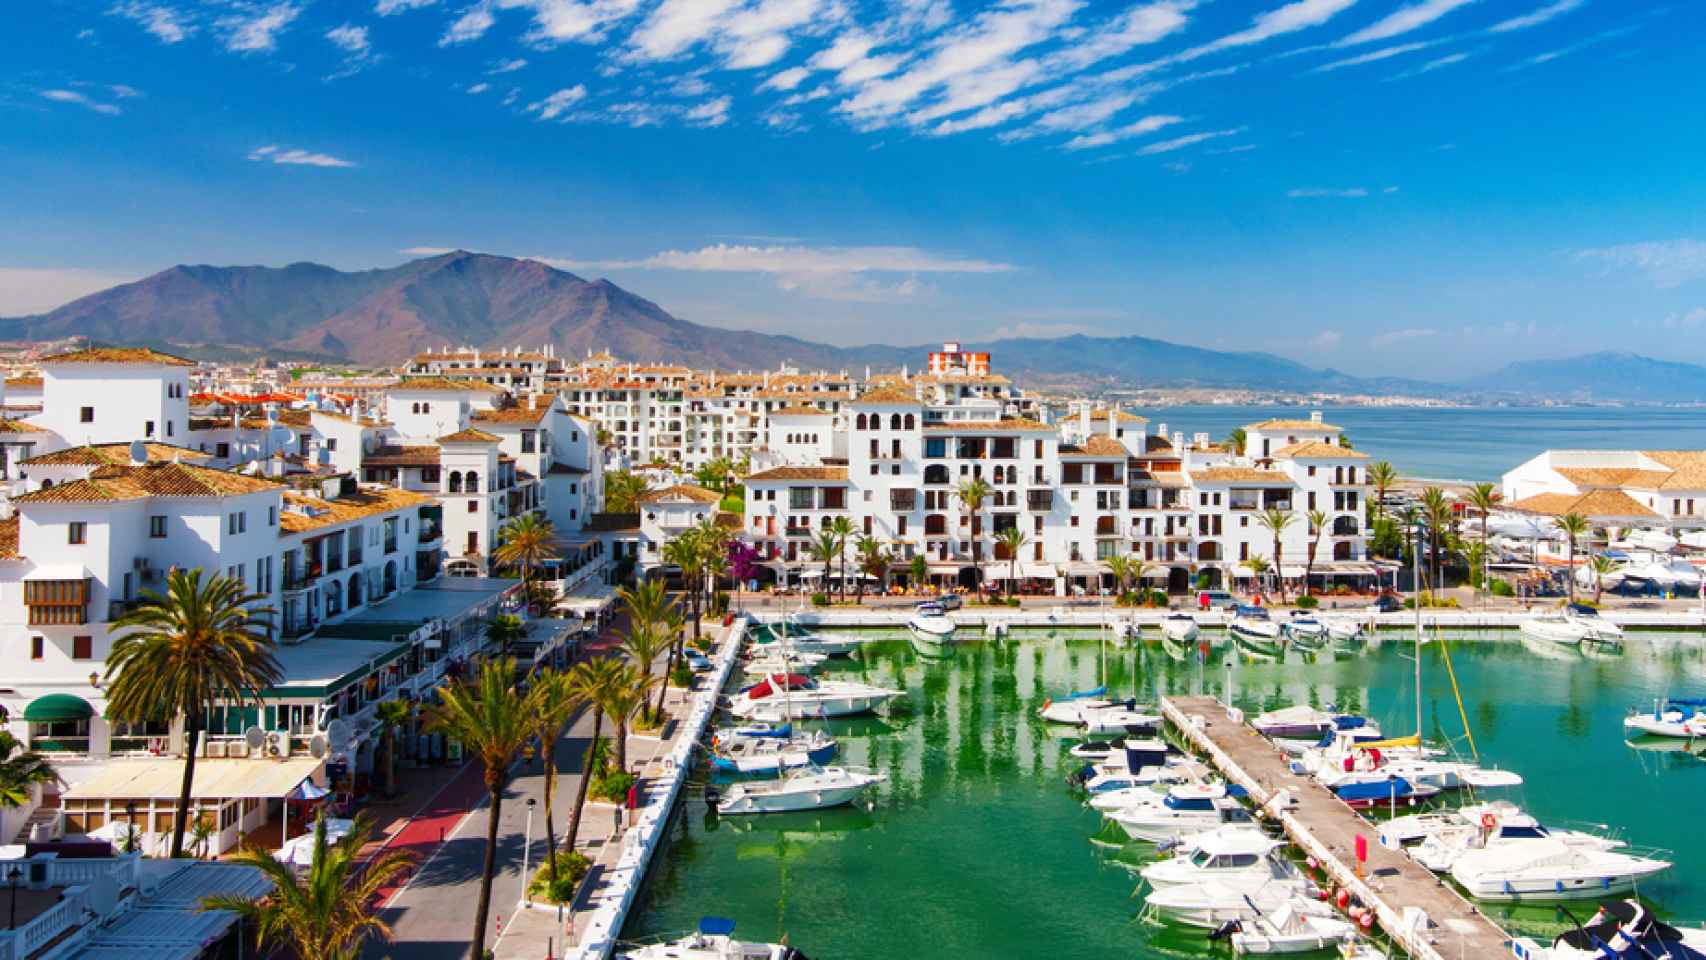 Puerto Banus, la zona más elitista de Marbella, considerada la 'capital' de la Costa del Sol.